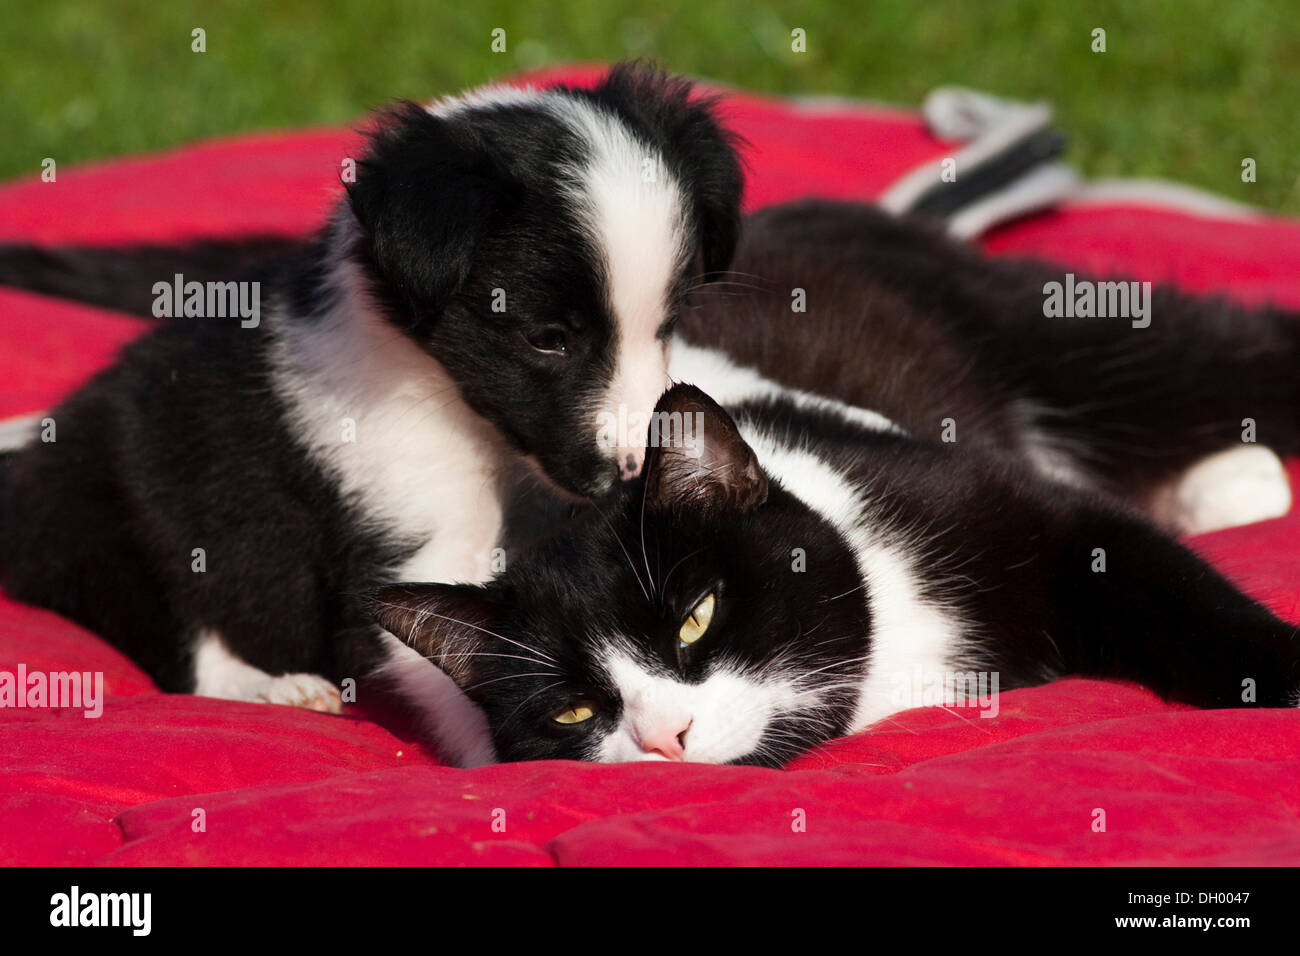 Chiot Border Collie jouant avec un chat domestique noir et blanc sur une couverture pour chien rouge du Nord, Tyrol, Autriche, Europe Banque D'Images